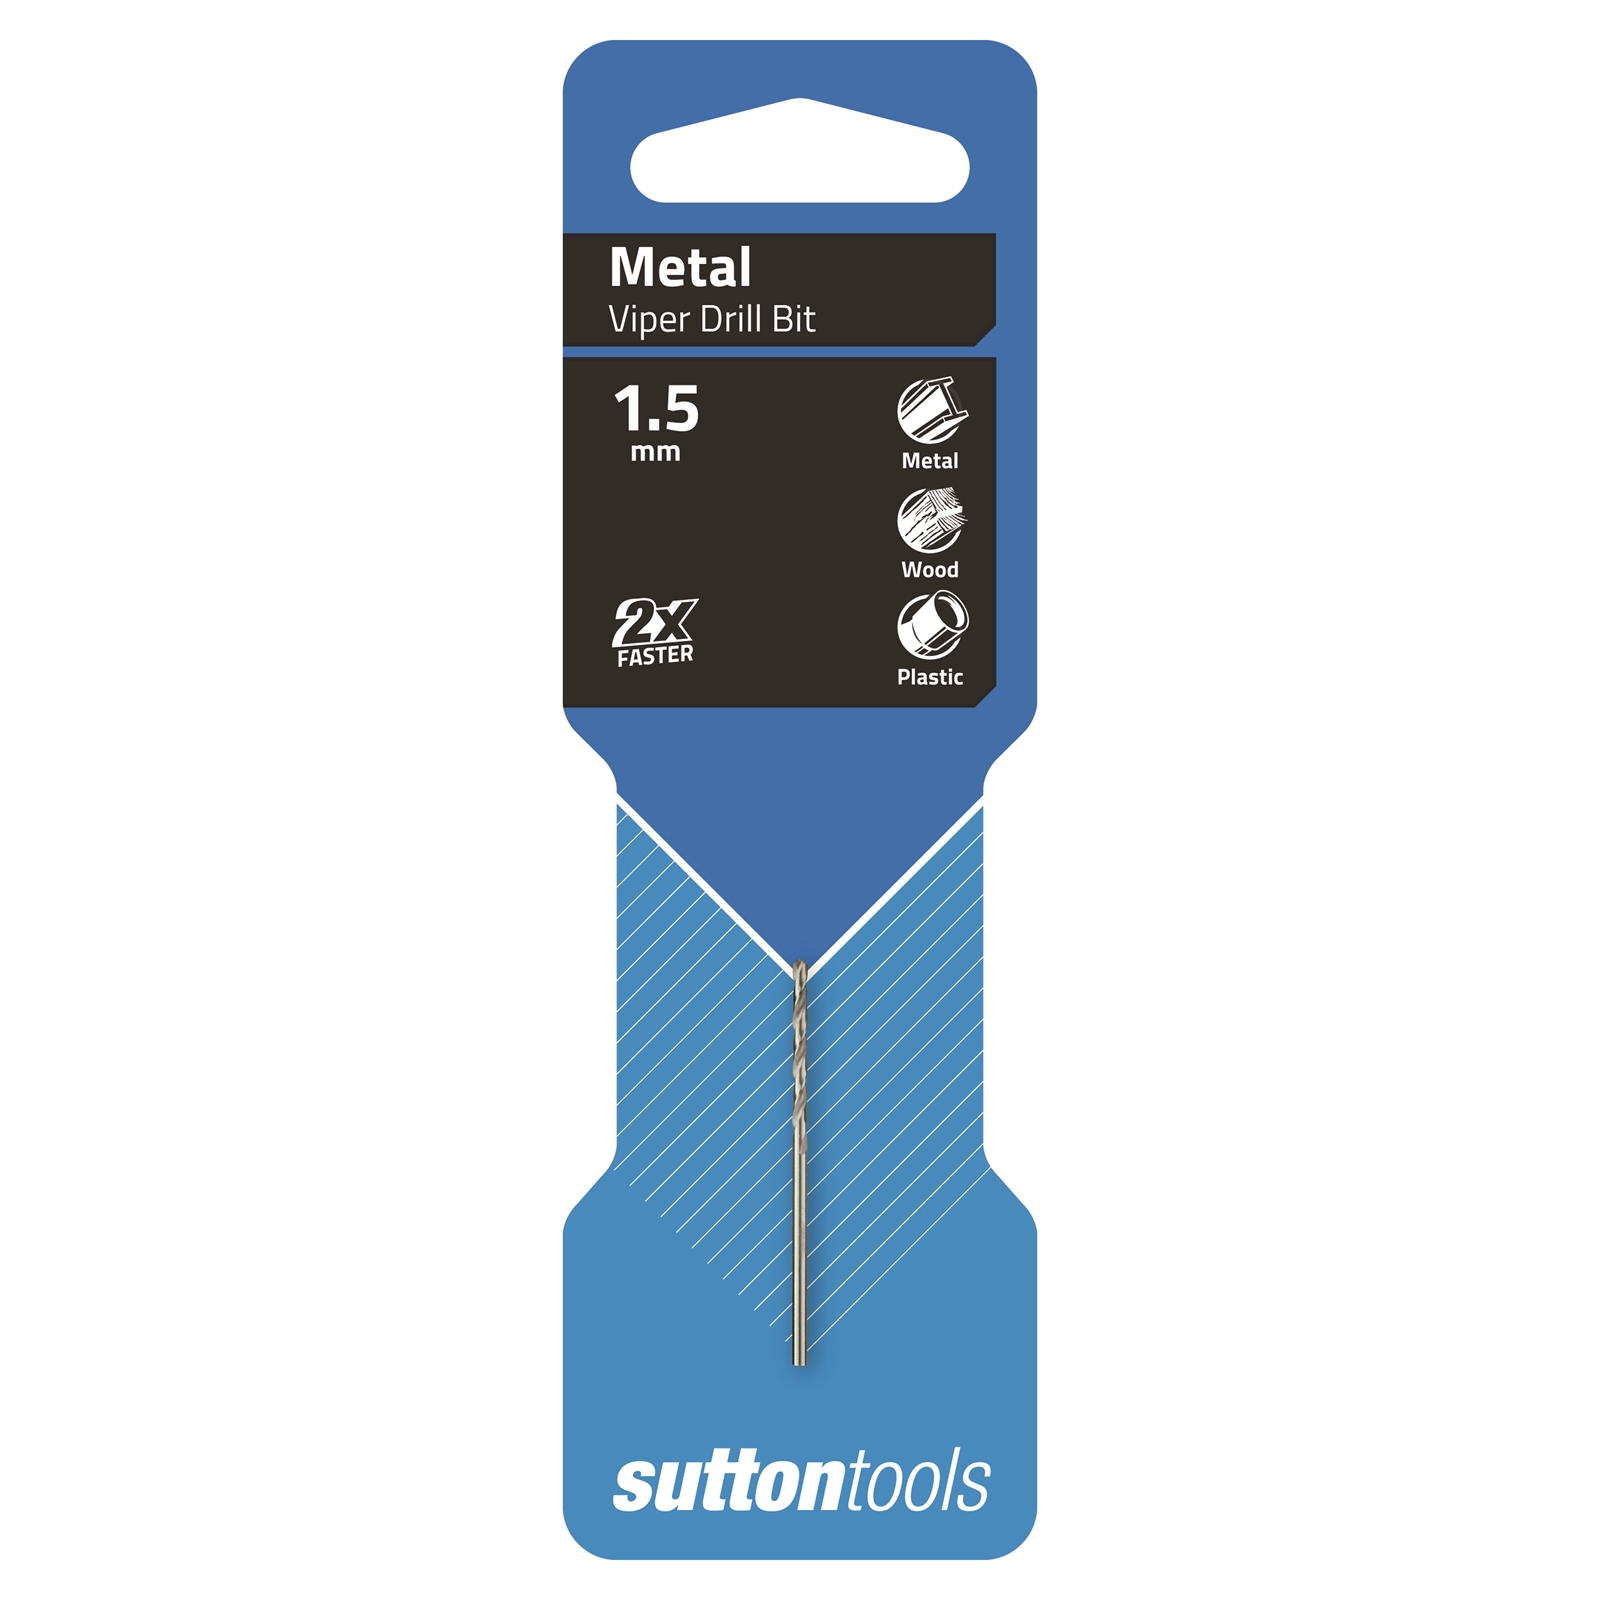 Sutton Tools 1.5mm HSS Metric Viper Drill Bit